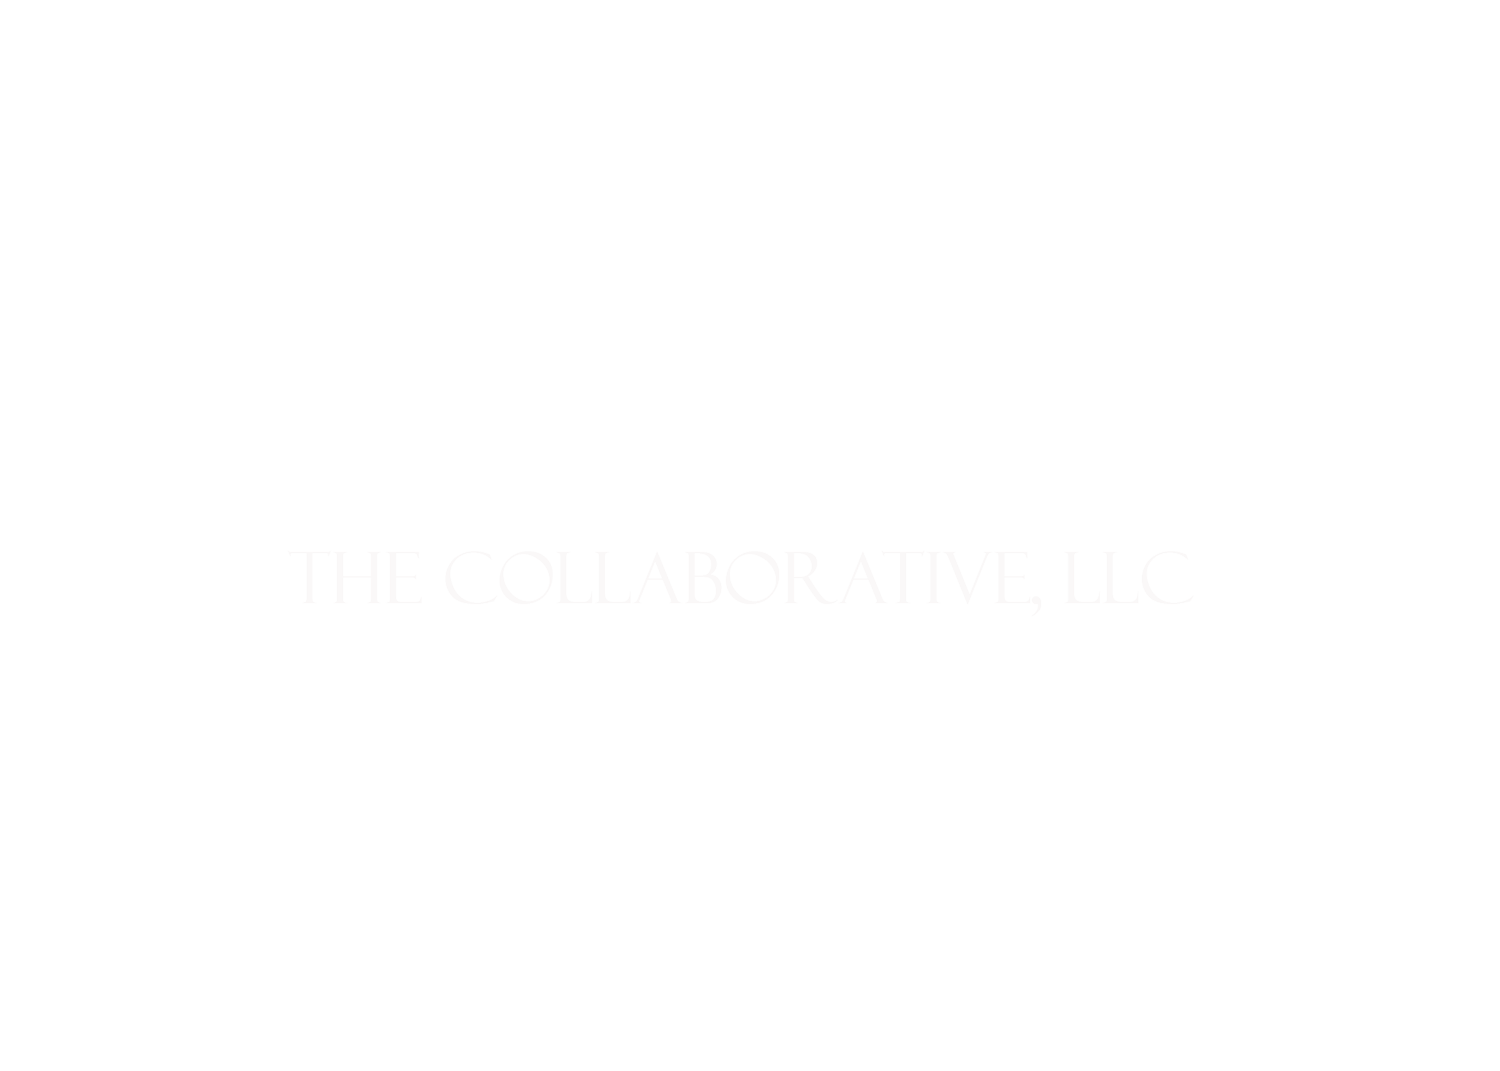 The Collaborative